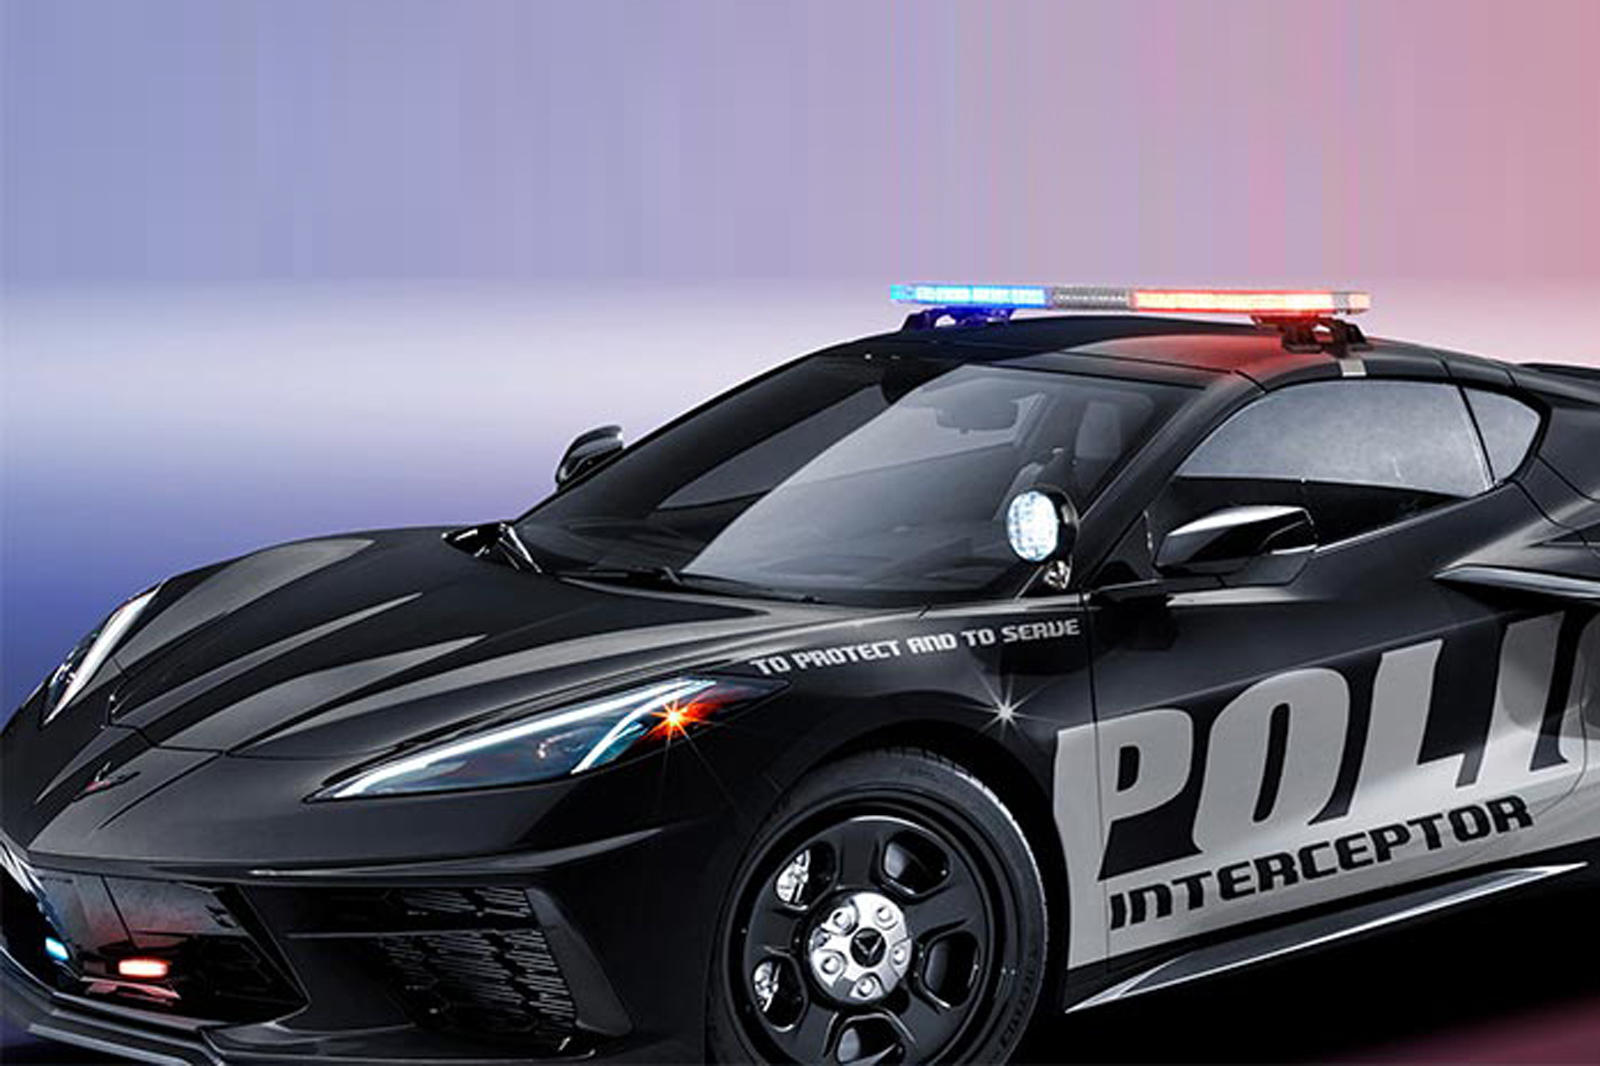 Если американская полиция не заинтересована в C8, то, возможно, вместо нее автомобилем будет заинтересован один из их немецких коллег. Несколько лет назад Федеральное министерство транспорта Германии заказало эксклюзивный C7 Corvette, настроенный для